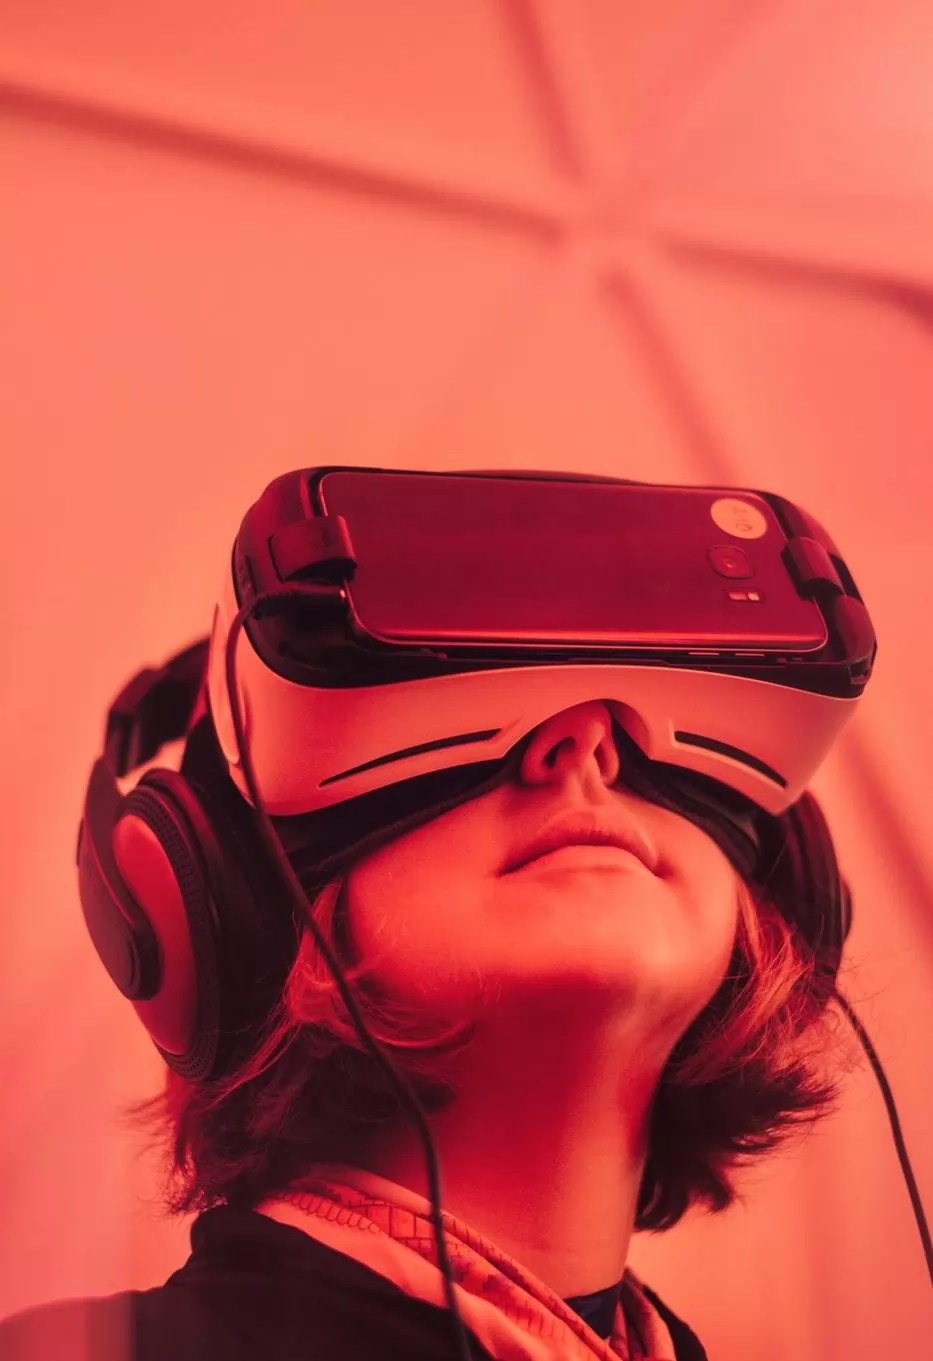 il mercato della realtà aumentata, virtuale e mista